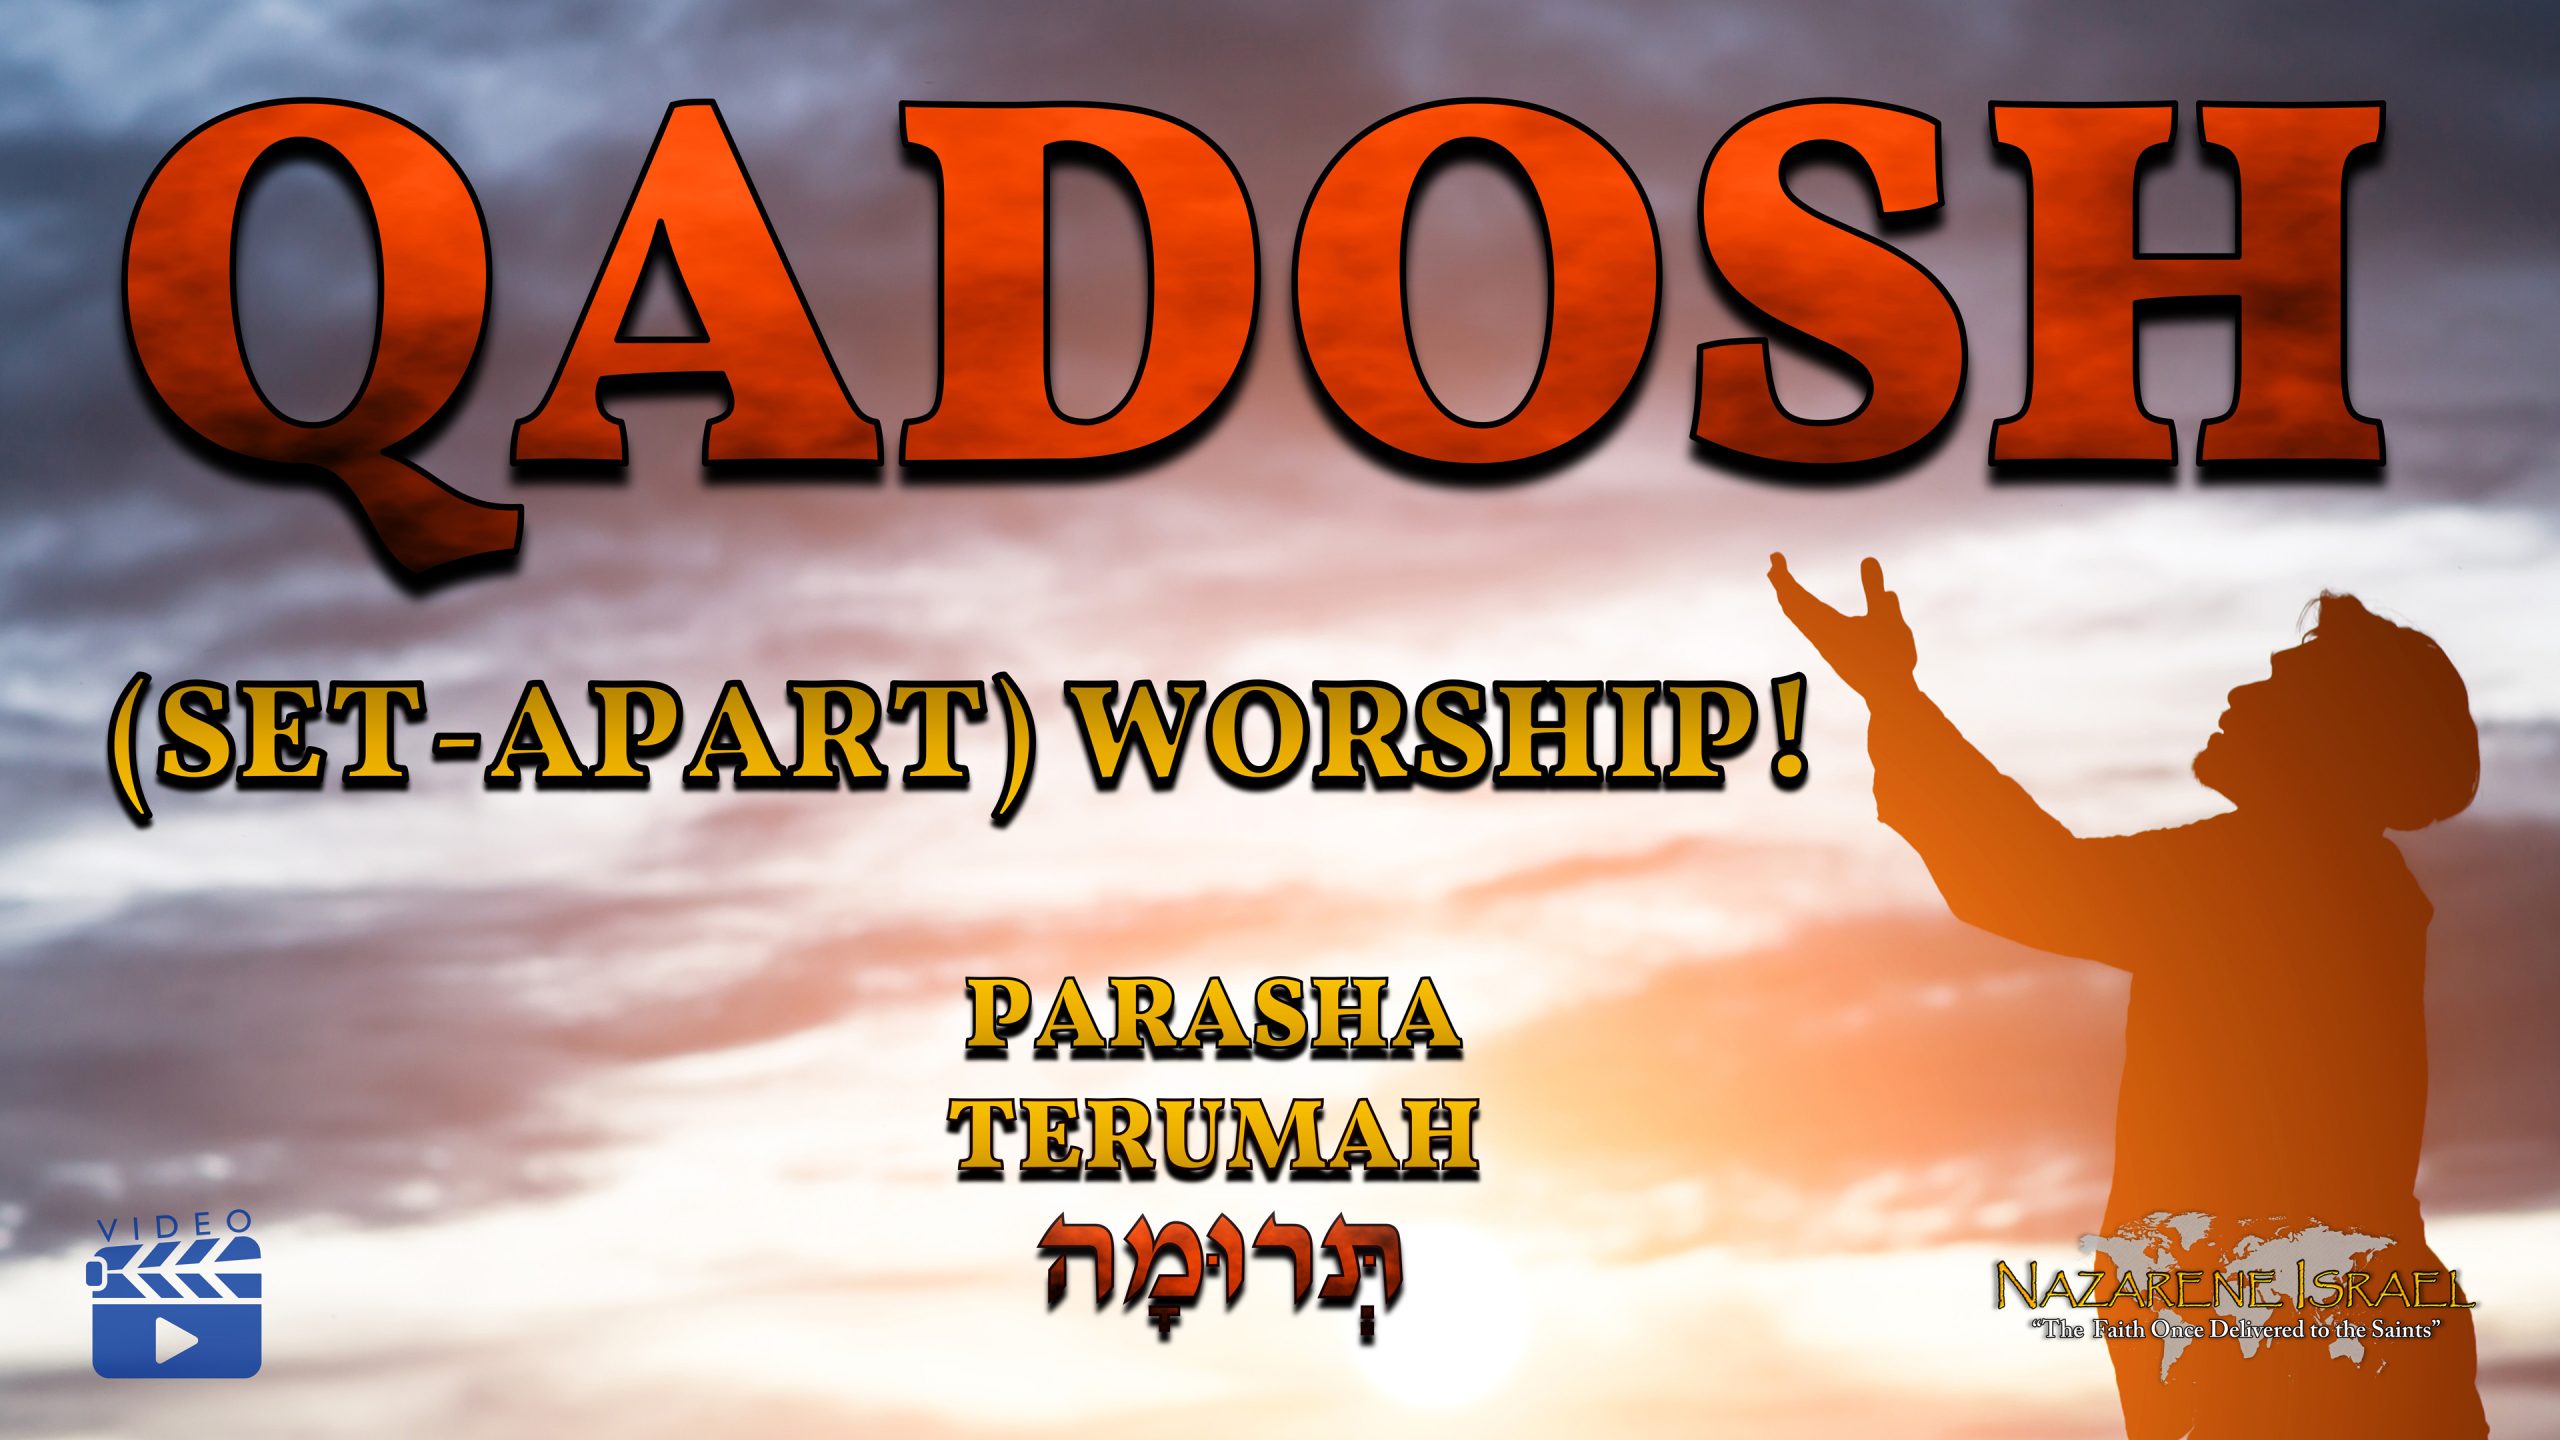 Parasha Terumah – Qadosh (Set-apart) Worship!